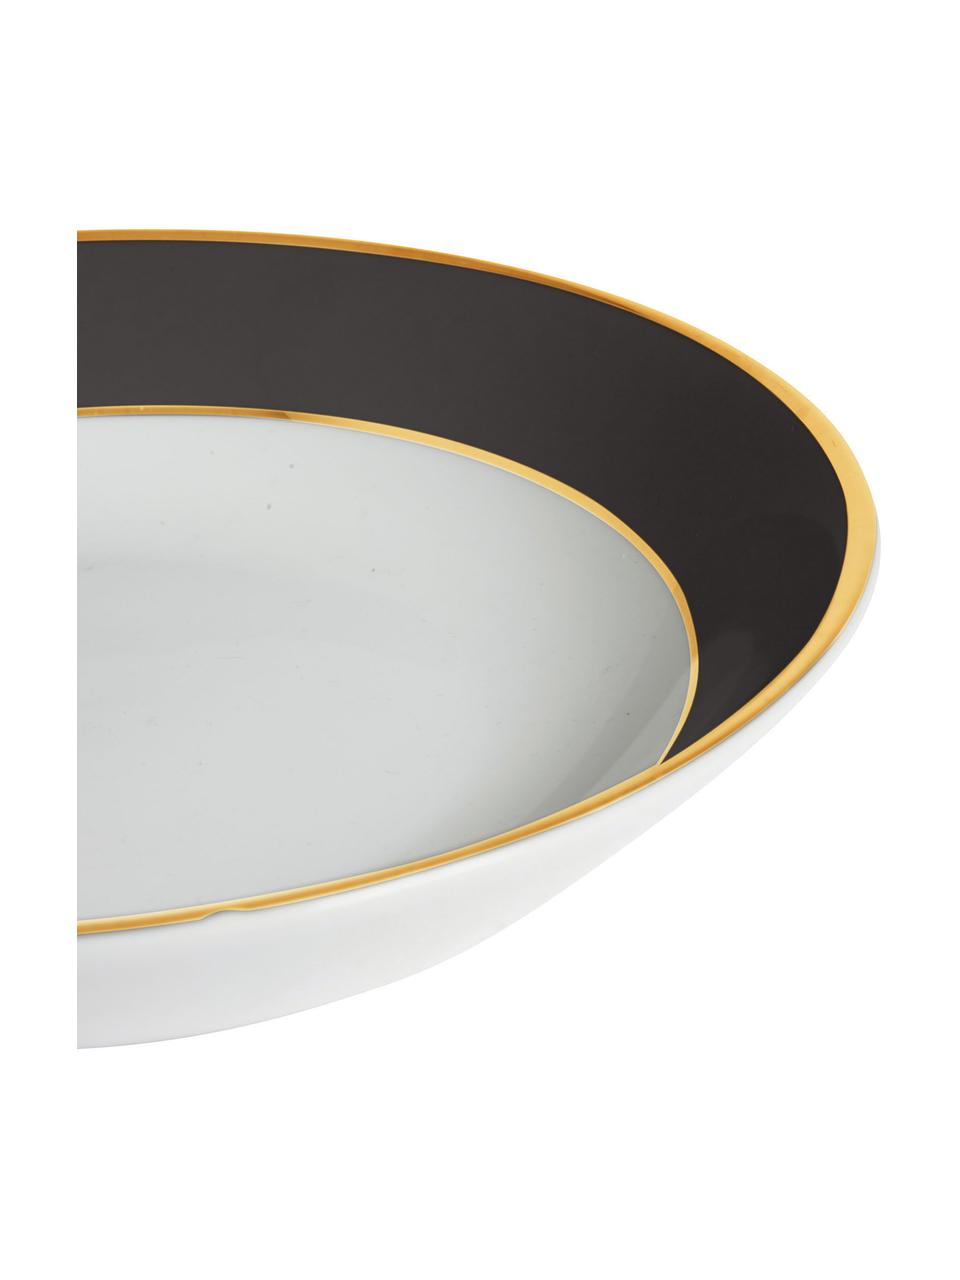 Assiette creuse porcelaine avec bord doré Ginger, 6 pièces, Porcelaine, Noir, blanc, couleur dorée, Ø 23 x haut. 5 cm